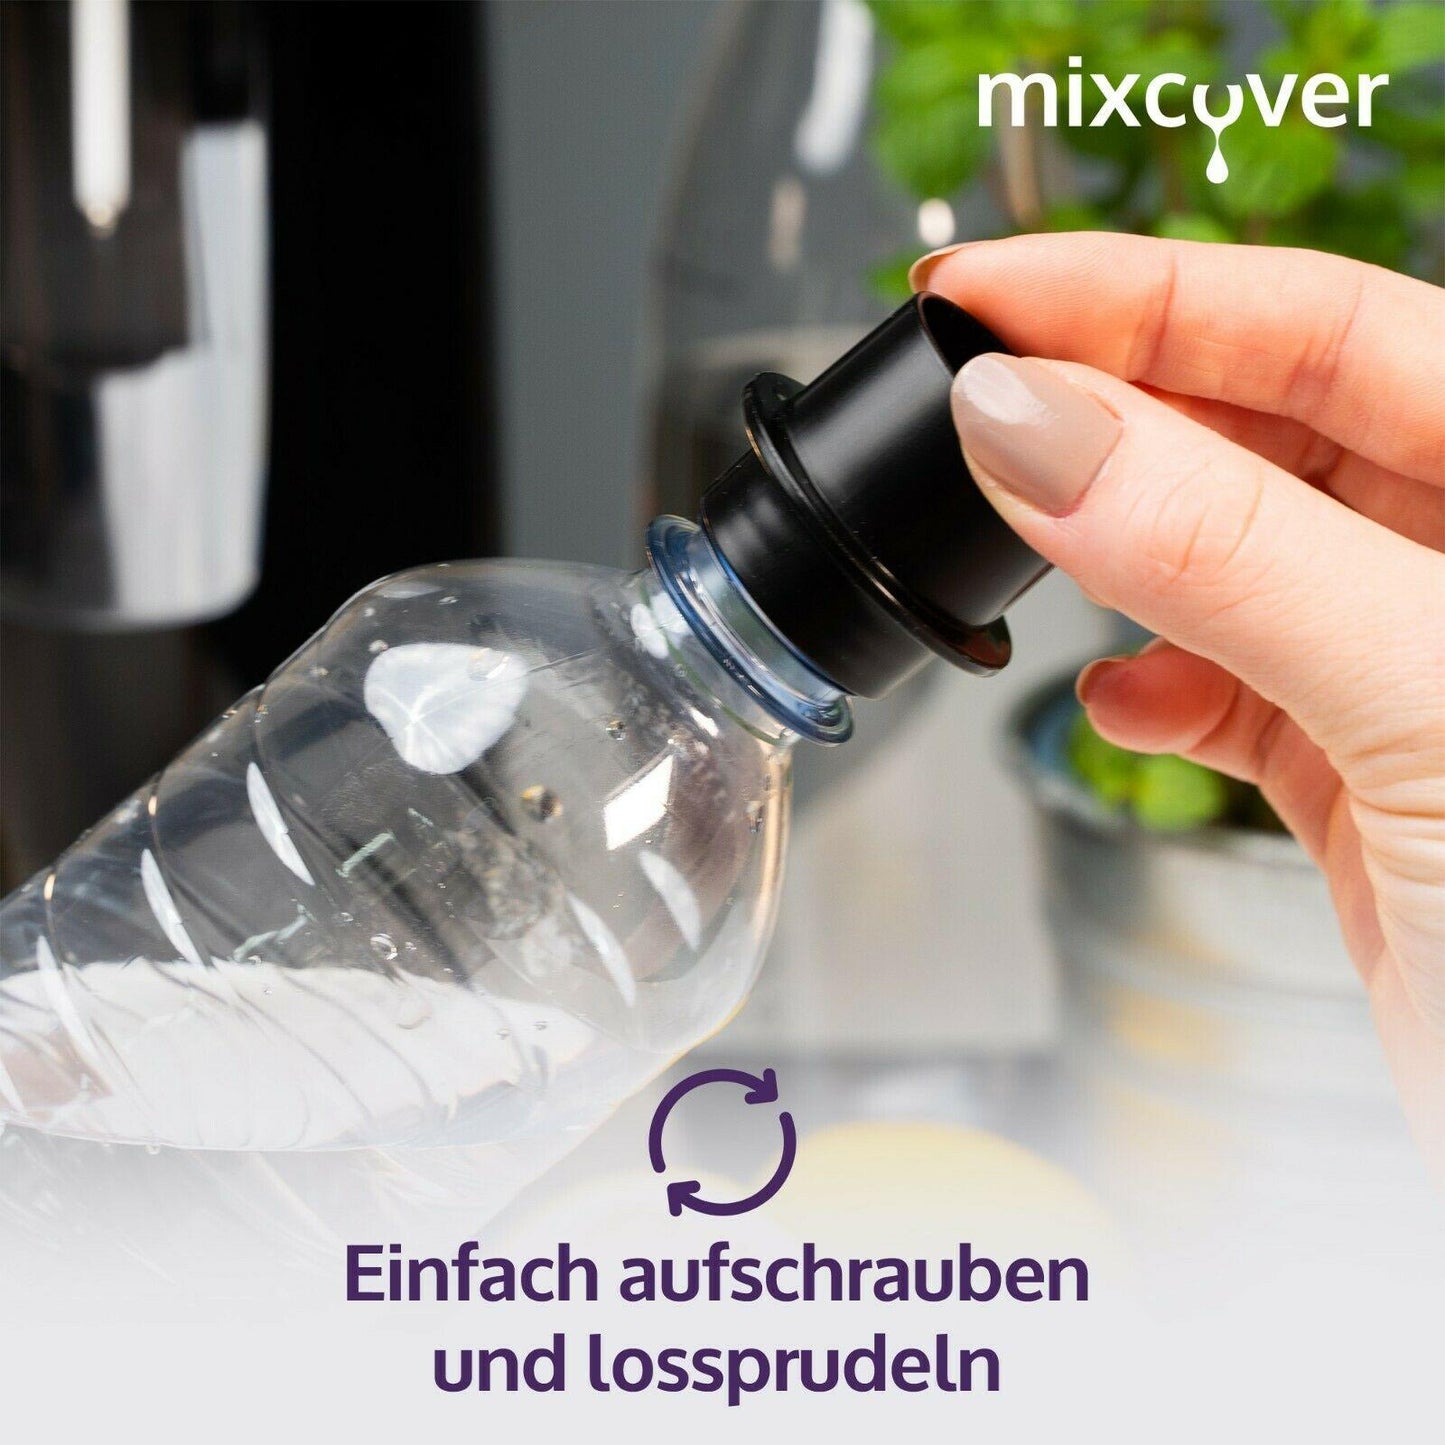 mixcover PET-Flaschen-Adapter passend für SodaStream Easy-für kleine PET Flasche - Mixcover - Mixcover